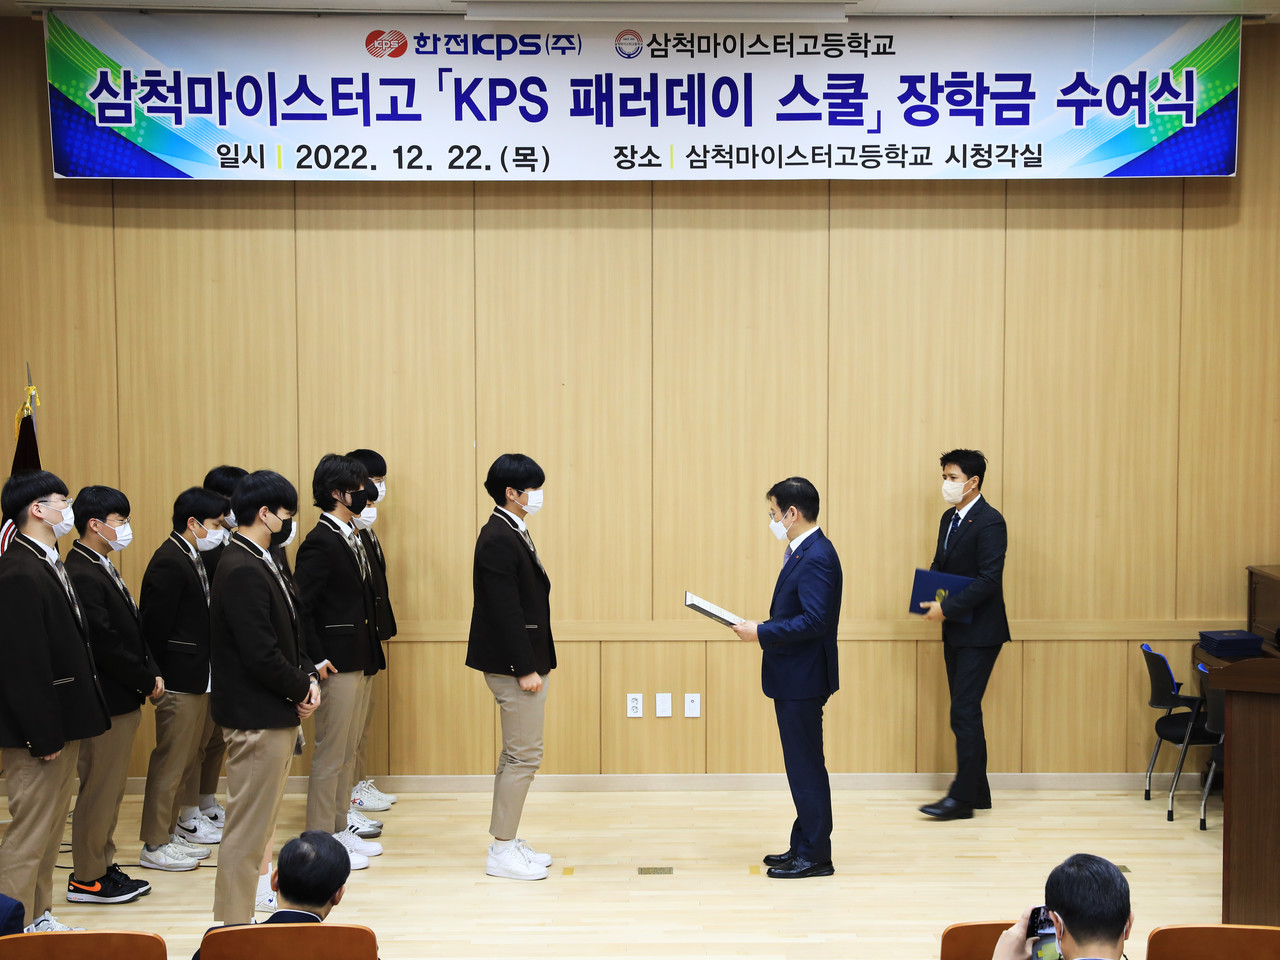 한전KPS 김홍연 사장(사진 가운데)이 삼척마이스터고등학교에서 장학금 증서를 전달하고 있다.  사진 = 한전KPS